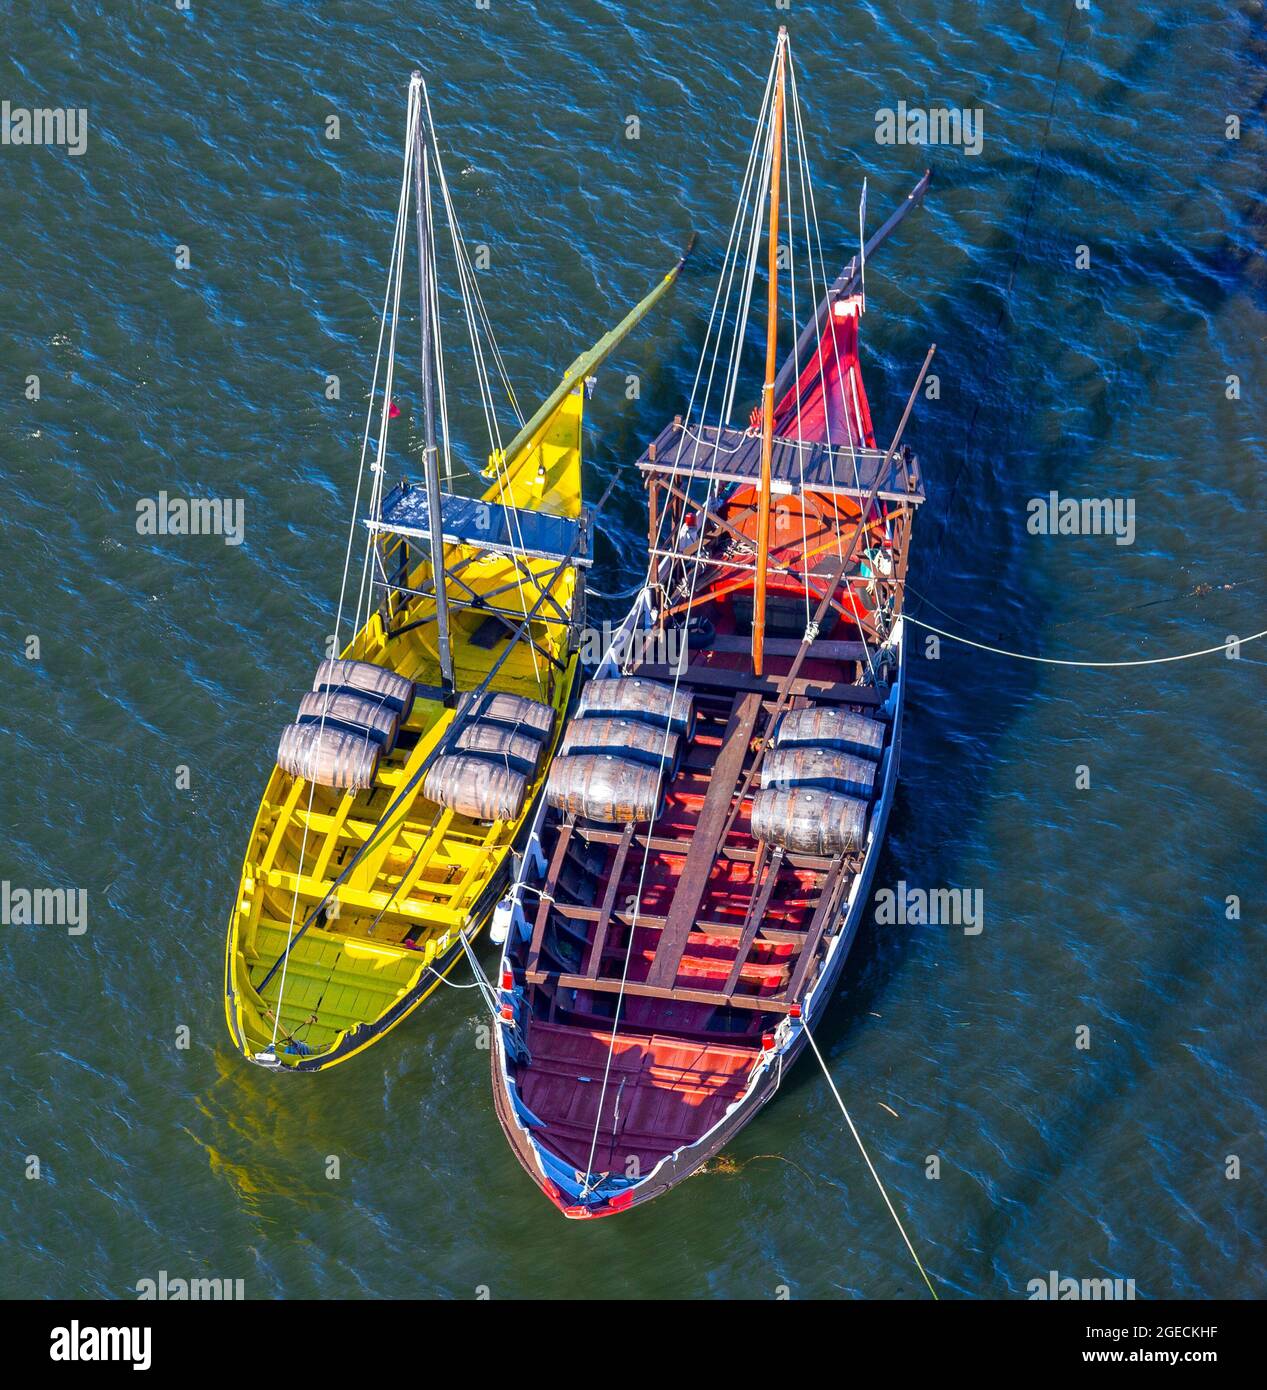 Spezielle Boote für den Transport von Wein entlang des Flusses Duero. Stockfoto